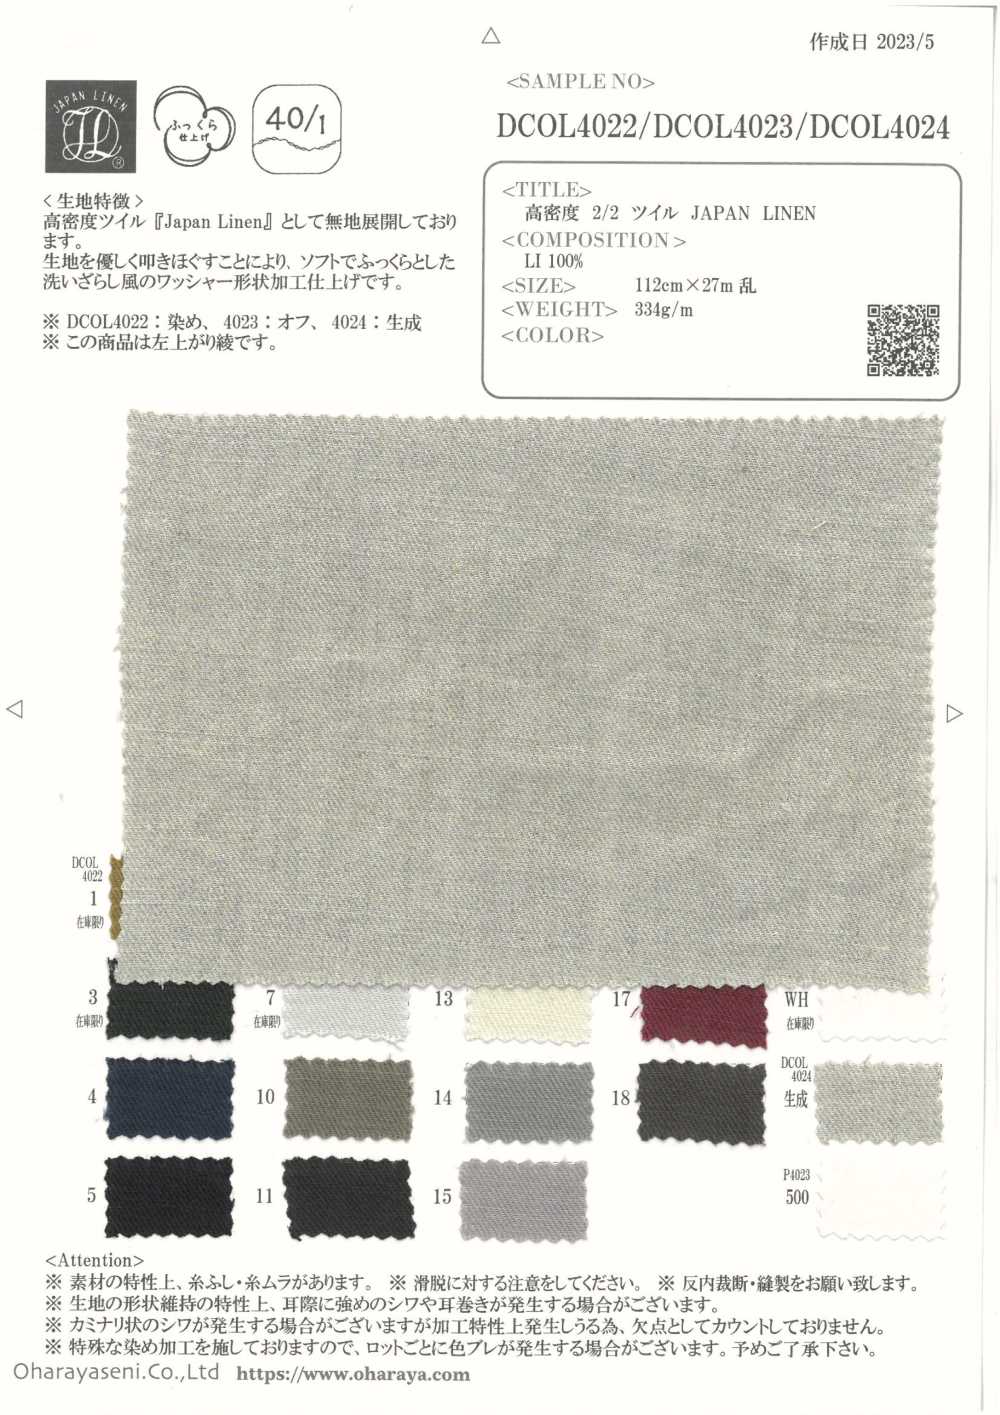 DCOL4022 LIN JAPON Sergé 2/2 Haute Densité[Fabrication De Textile] Oharayaseni